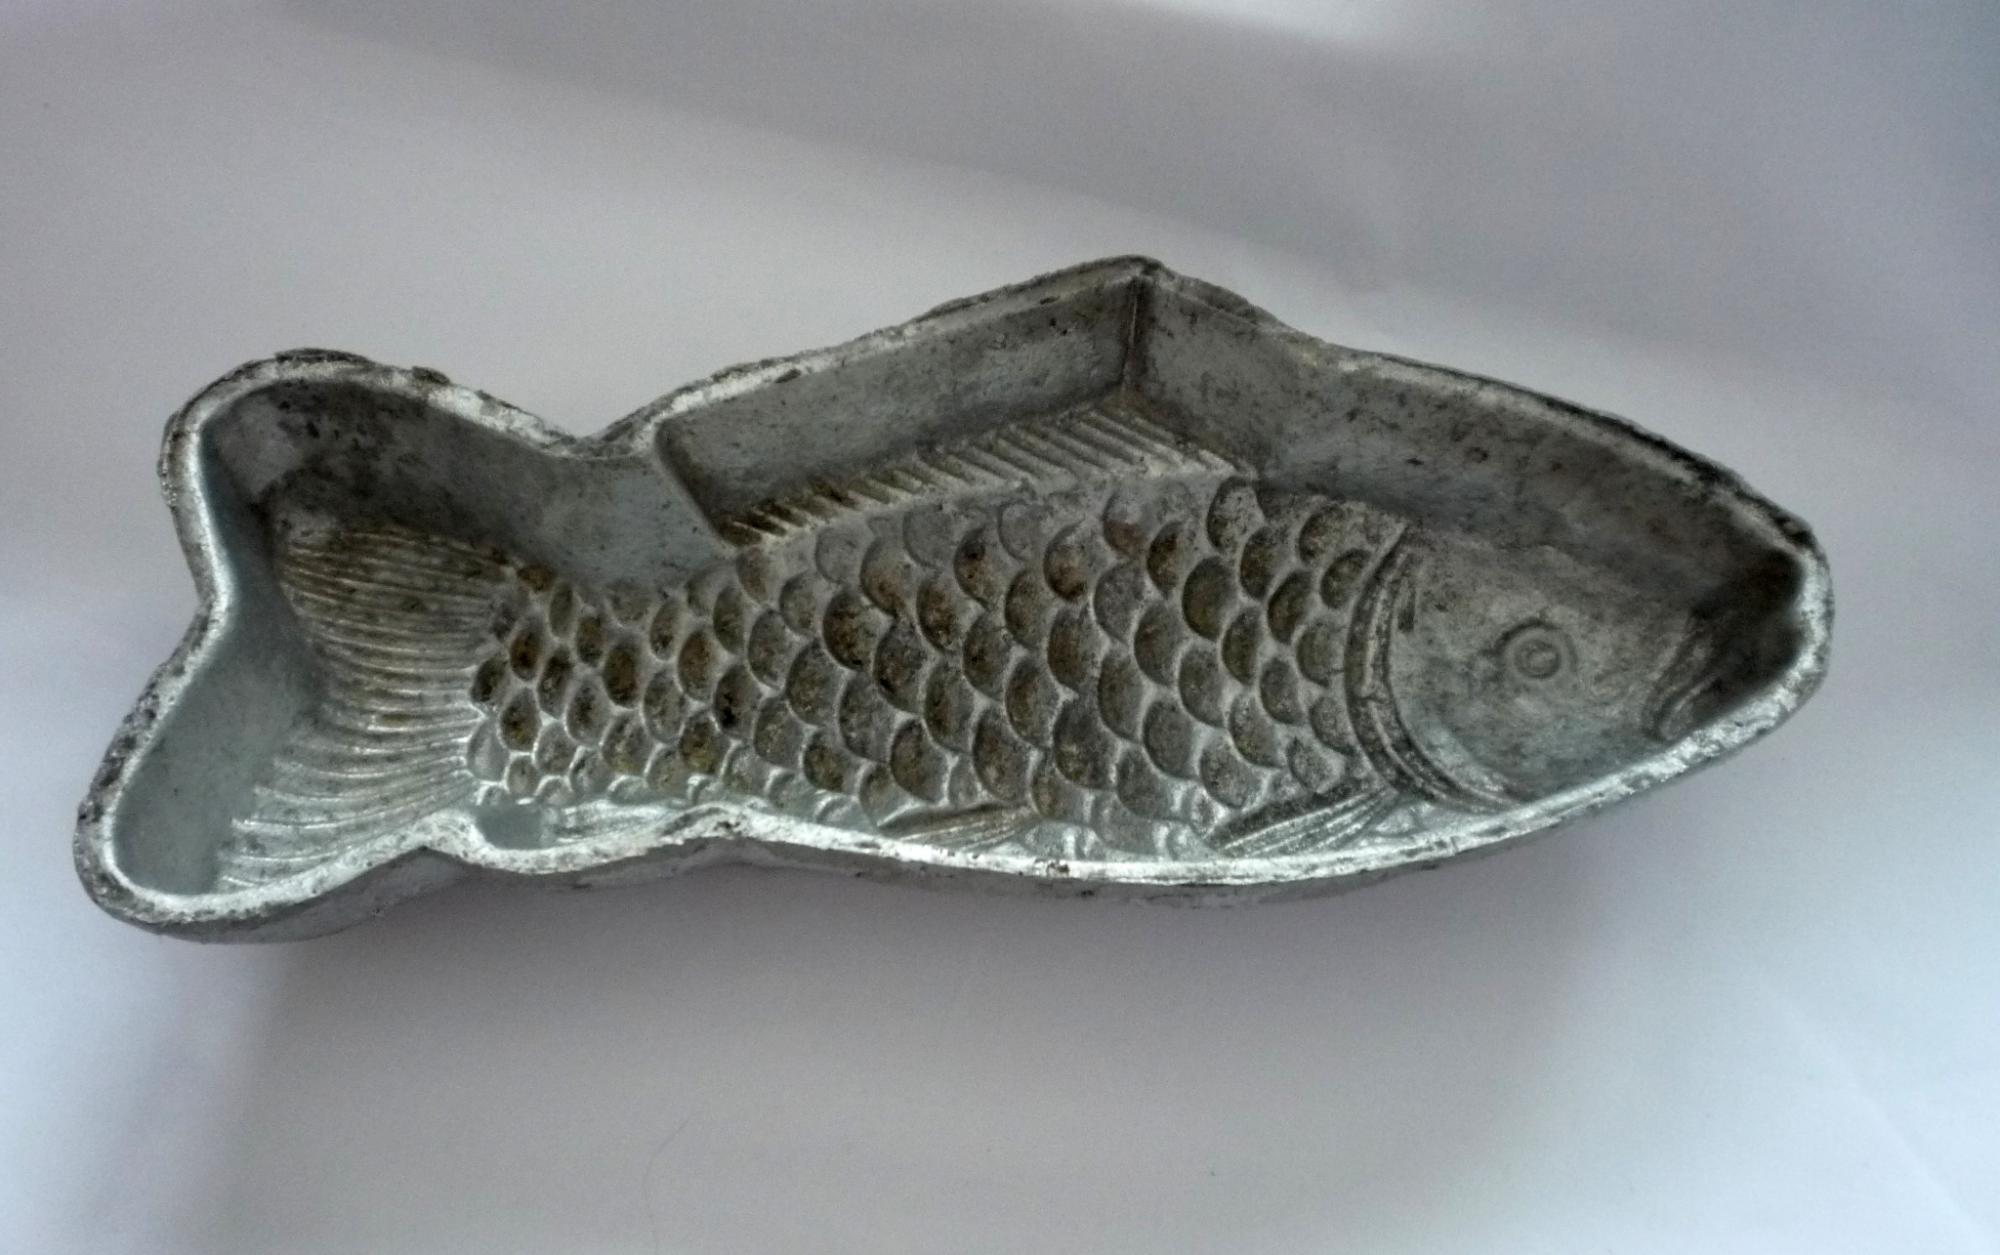 Купить форму рыба. Форма для заливного рыба. Форма для рыбного заливного. Пластиковая форма для заливного рыба. Металлическая рыба.